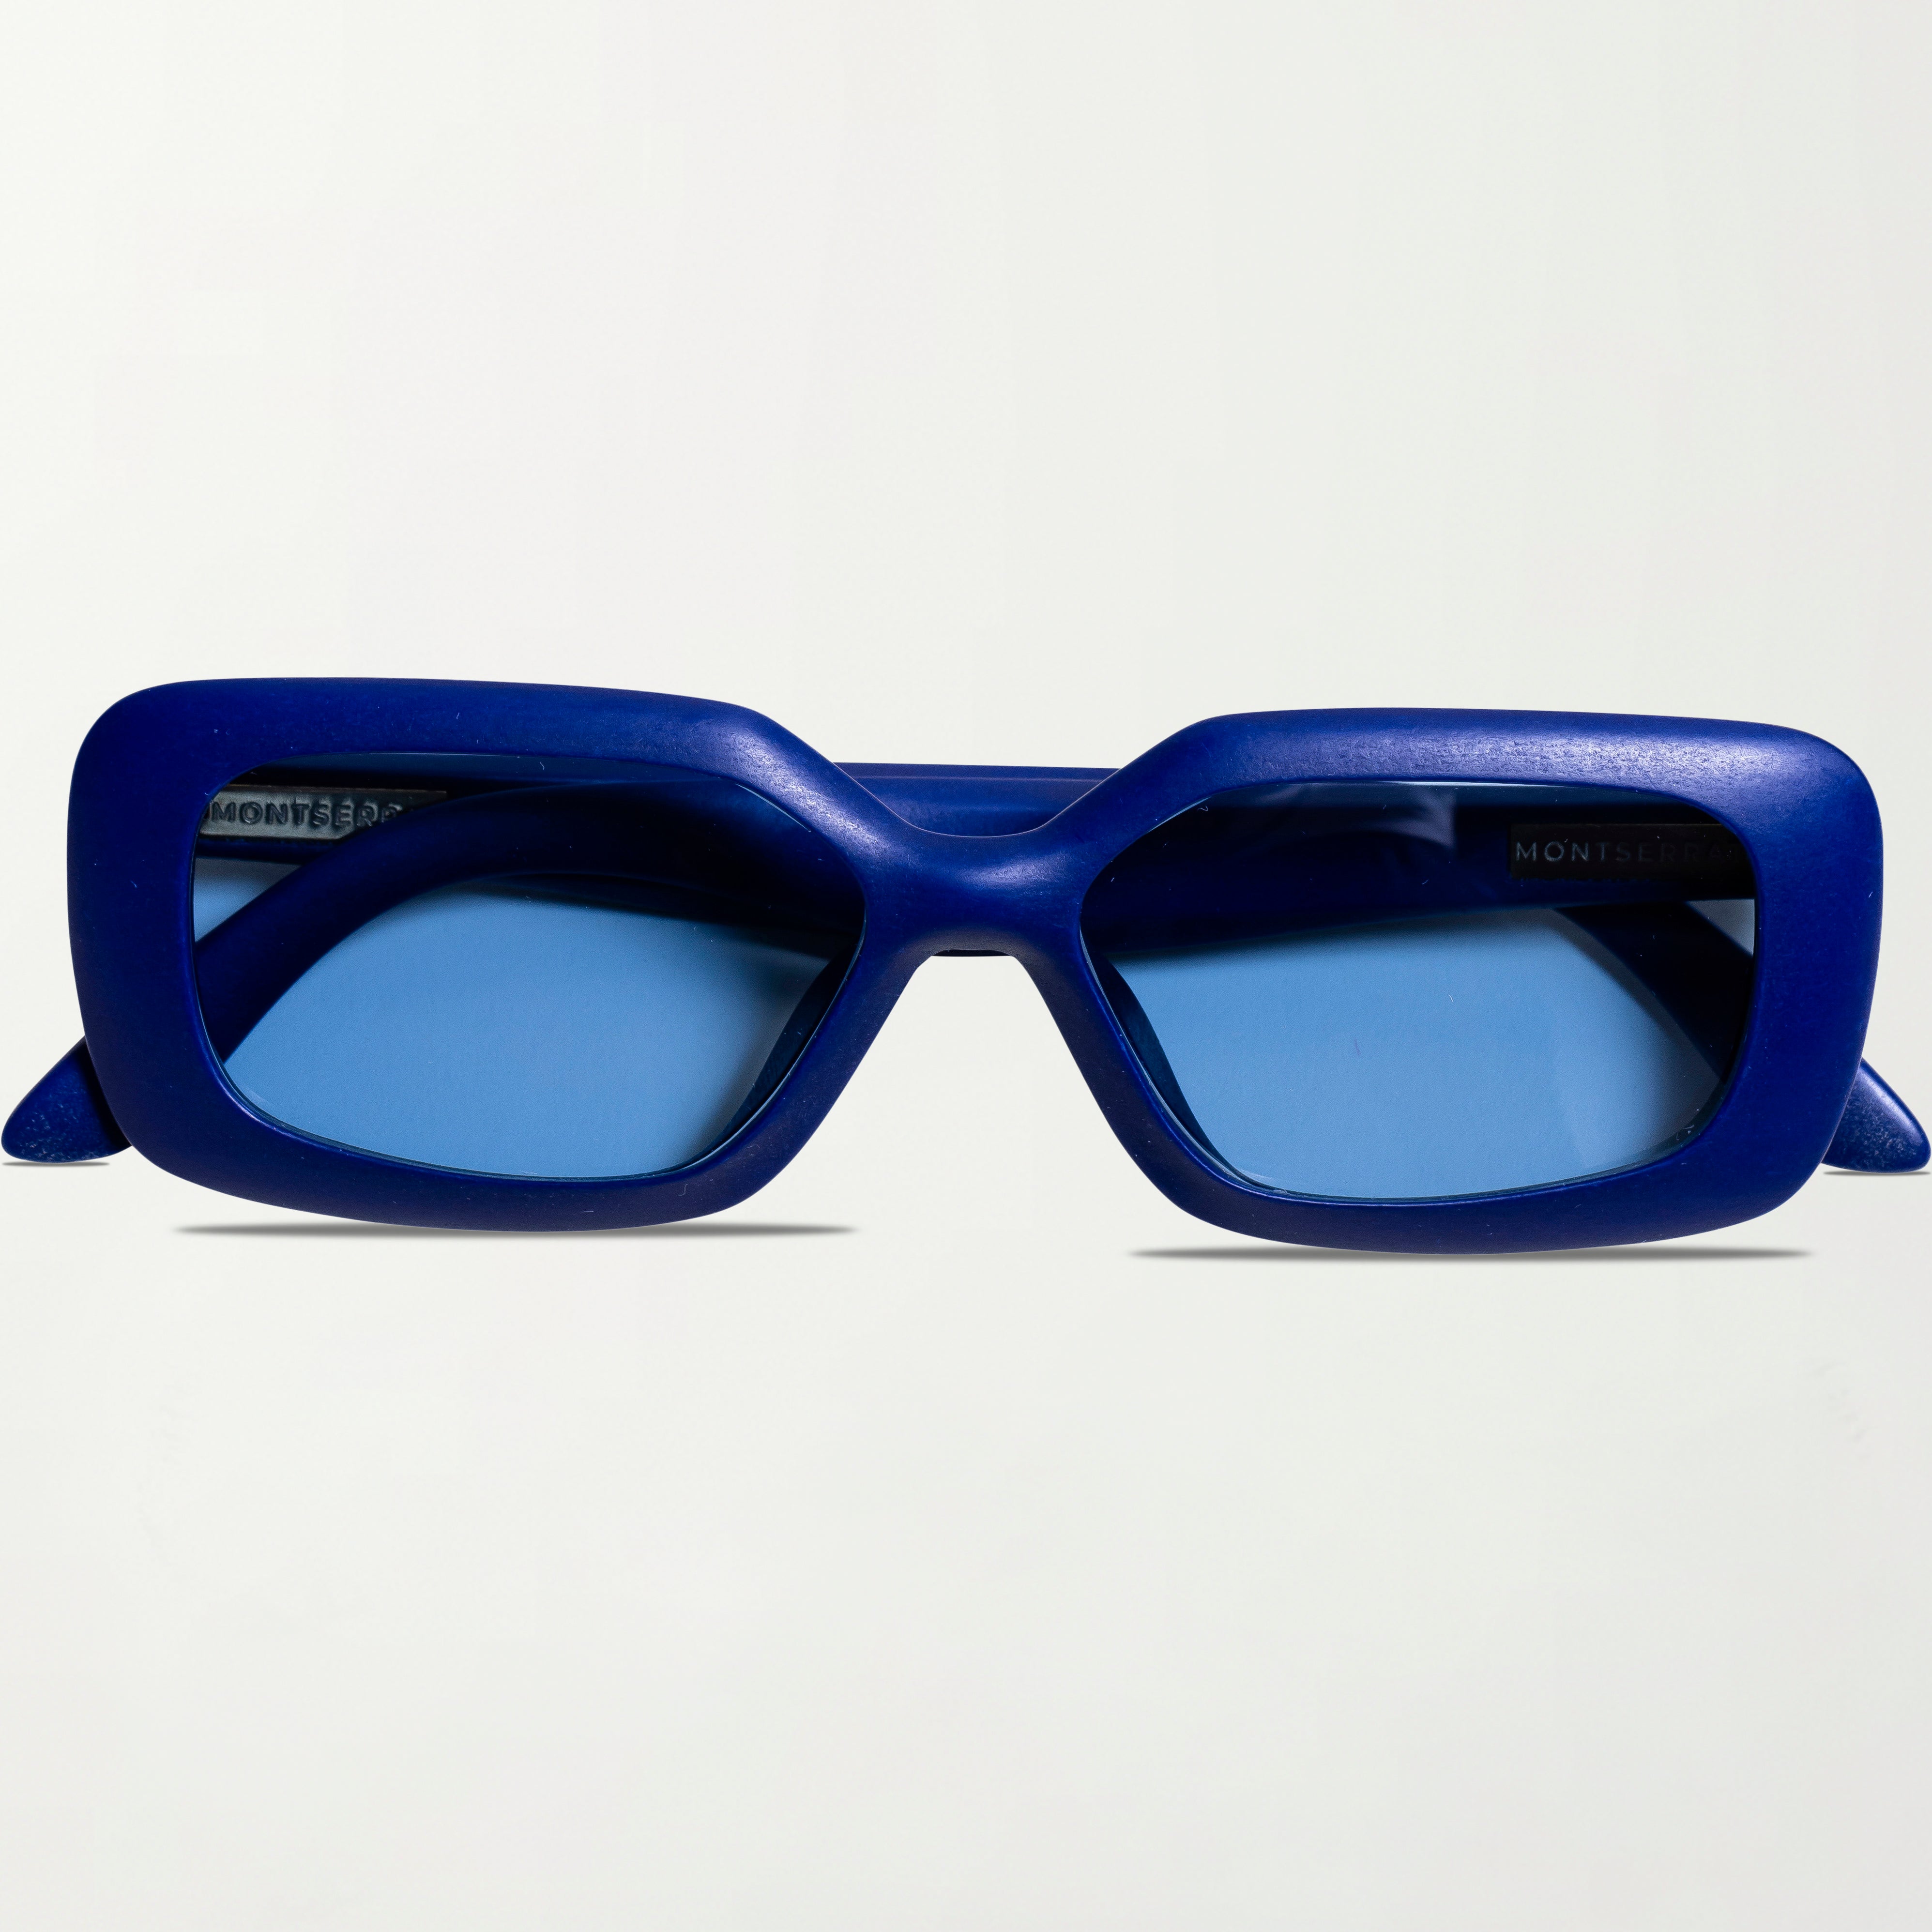 Picture of The Paros Sunglasses in Mediterranean Blue